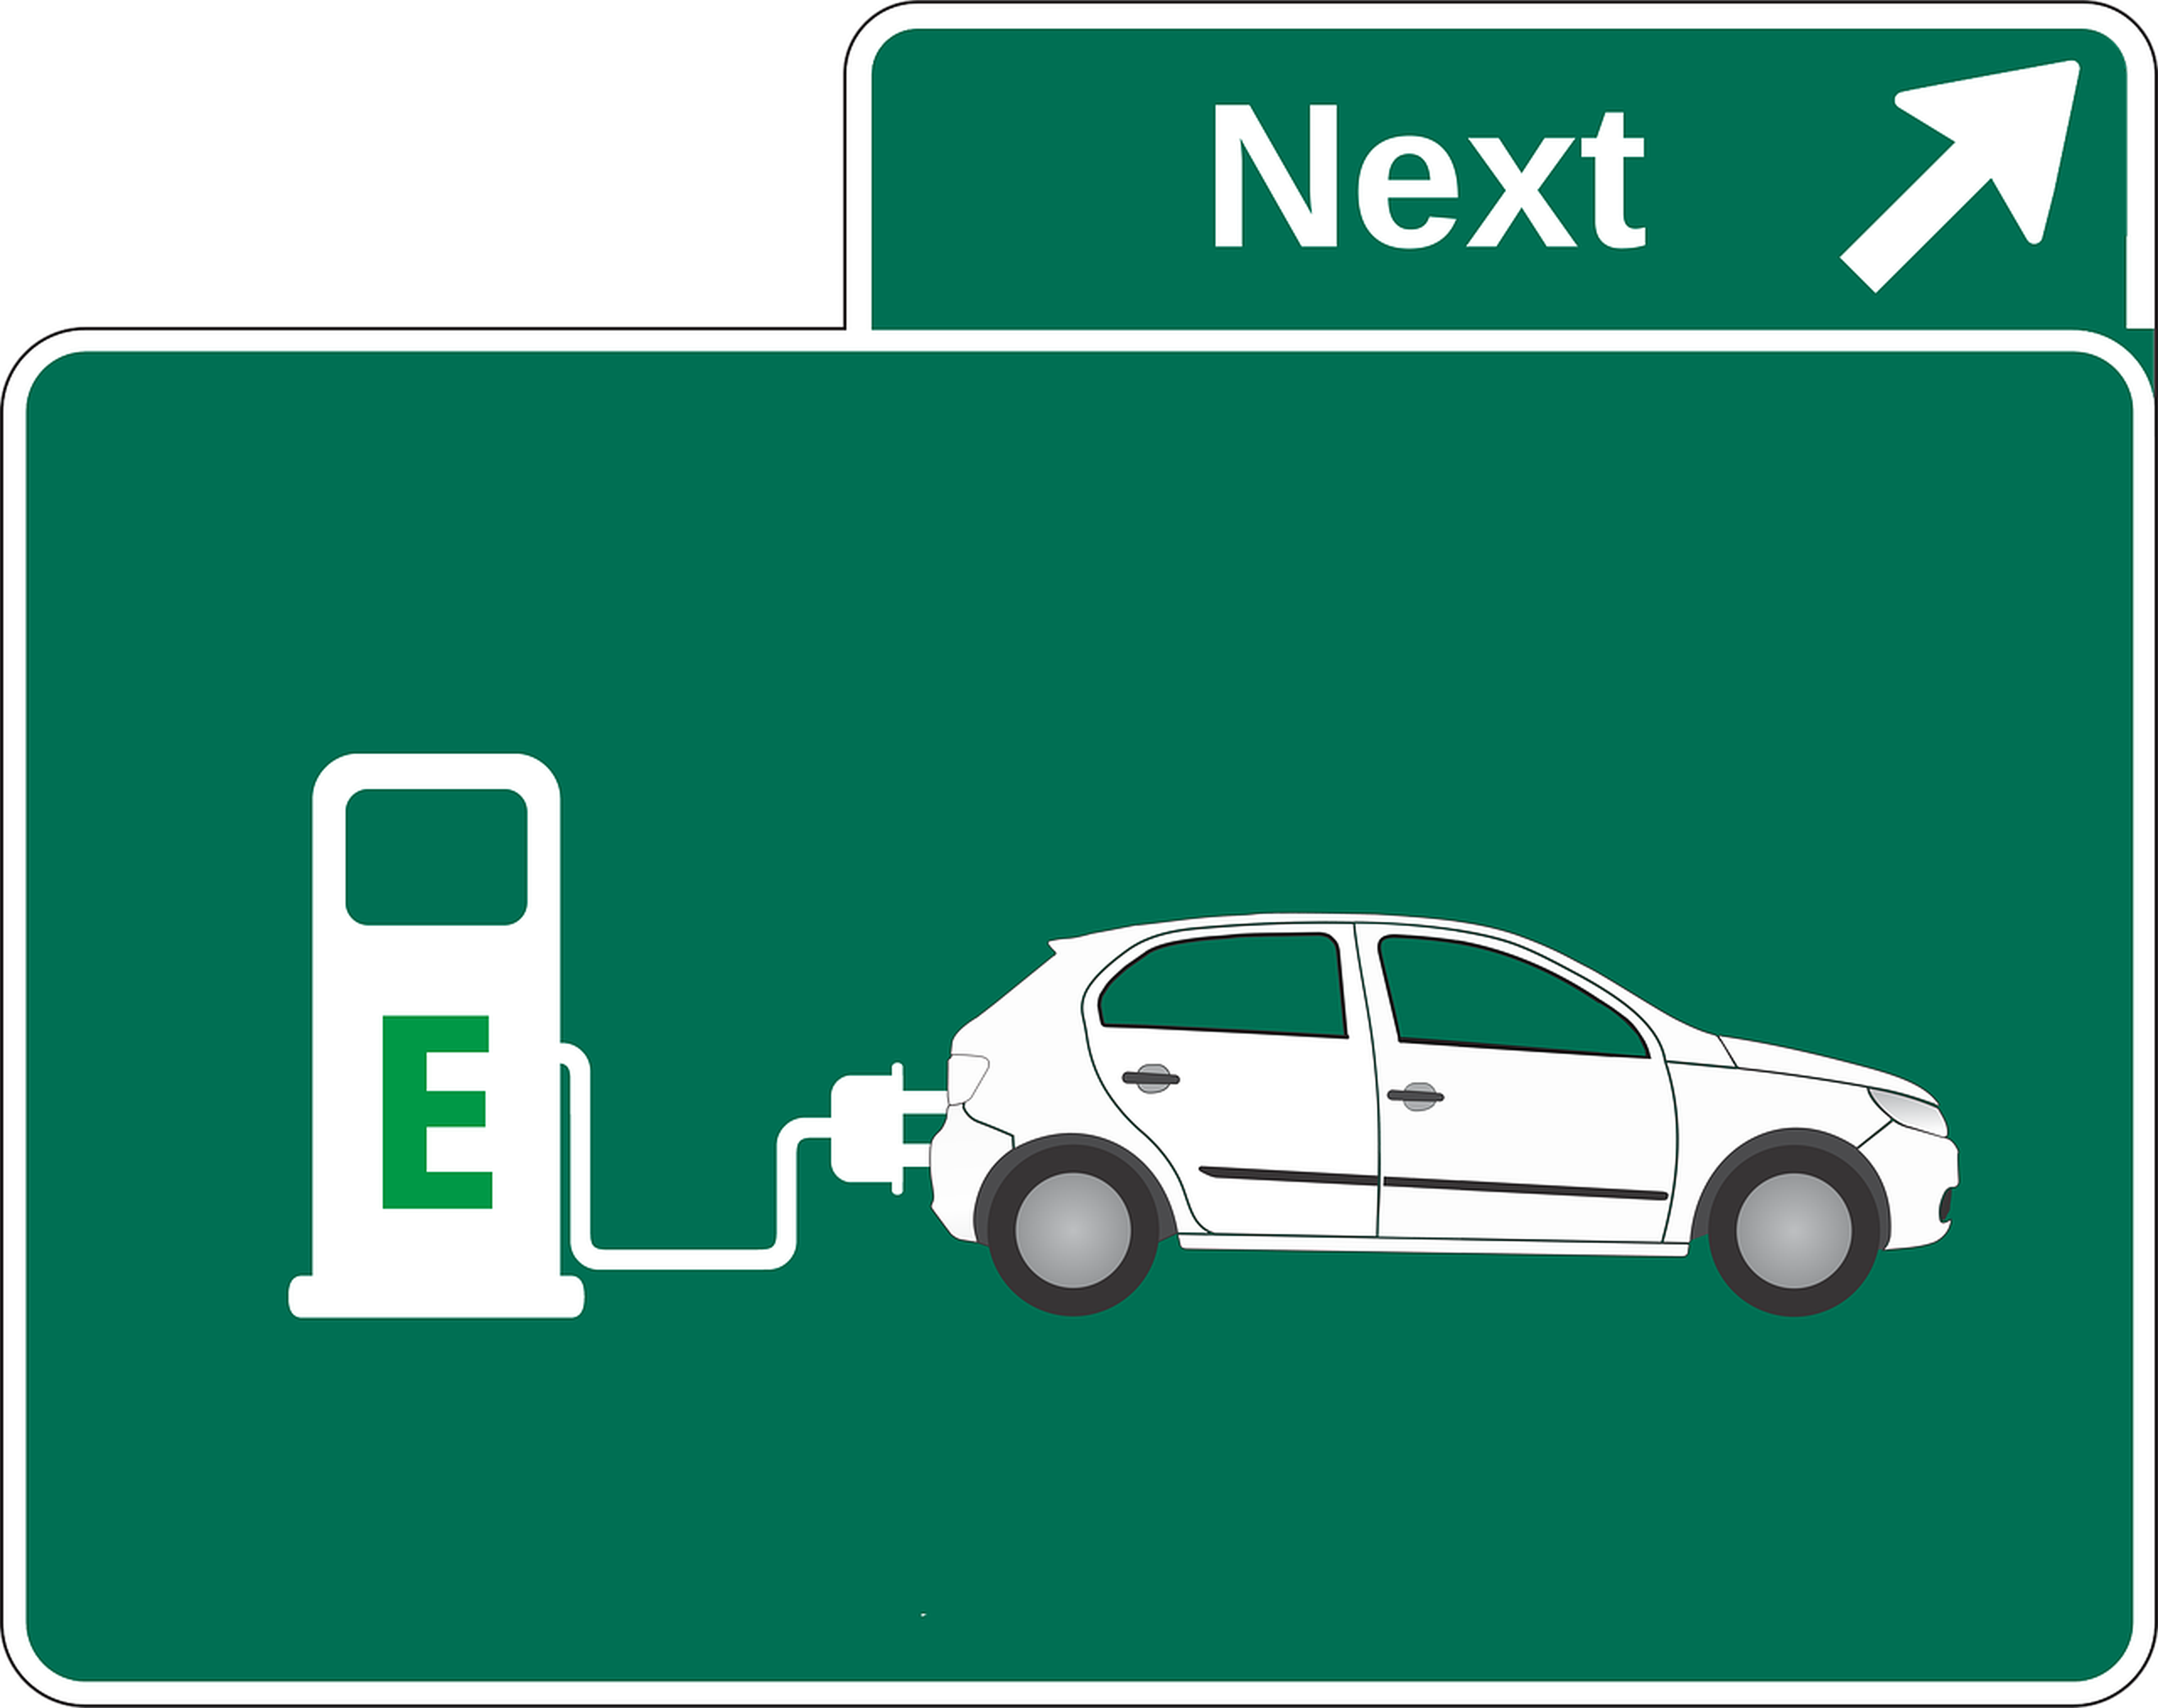 Gasolina vs alternativas